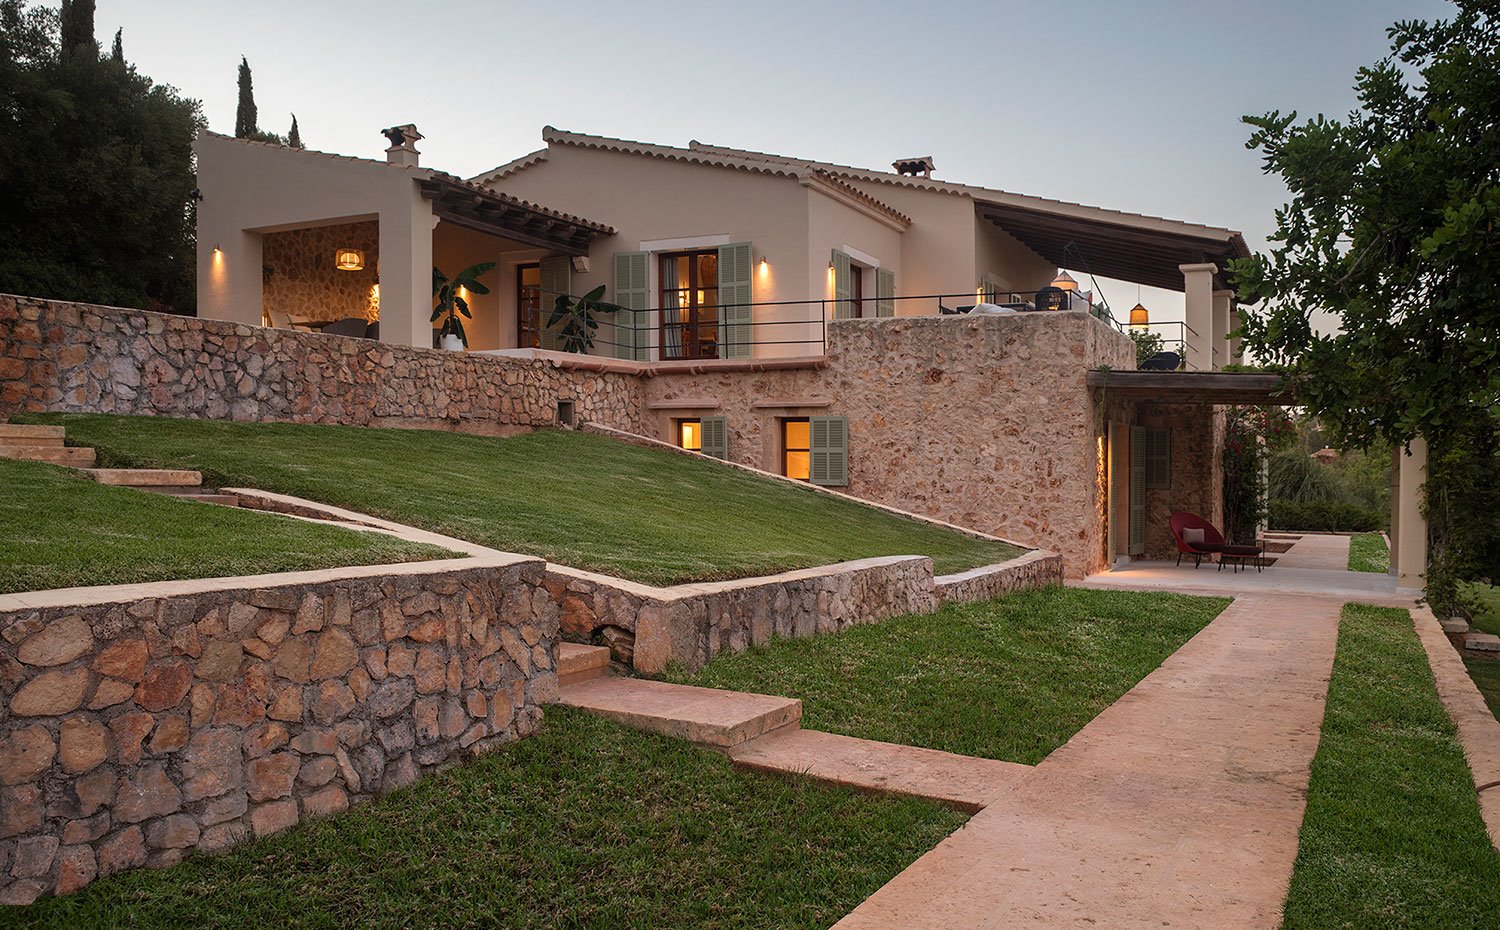 Exterior vivienda de piedra vista y beige, con zonas ajardinadas